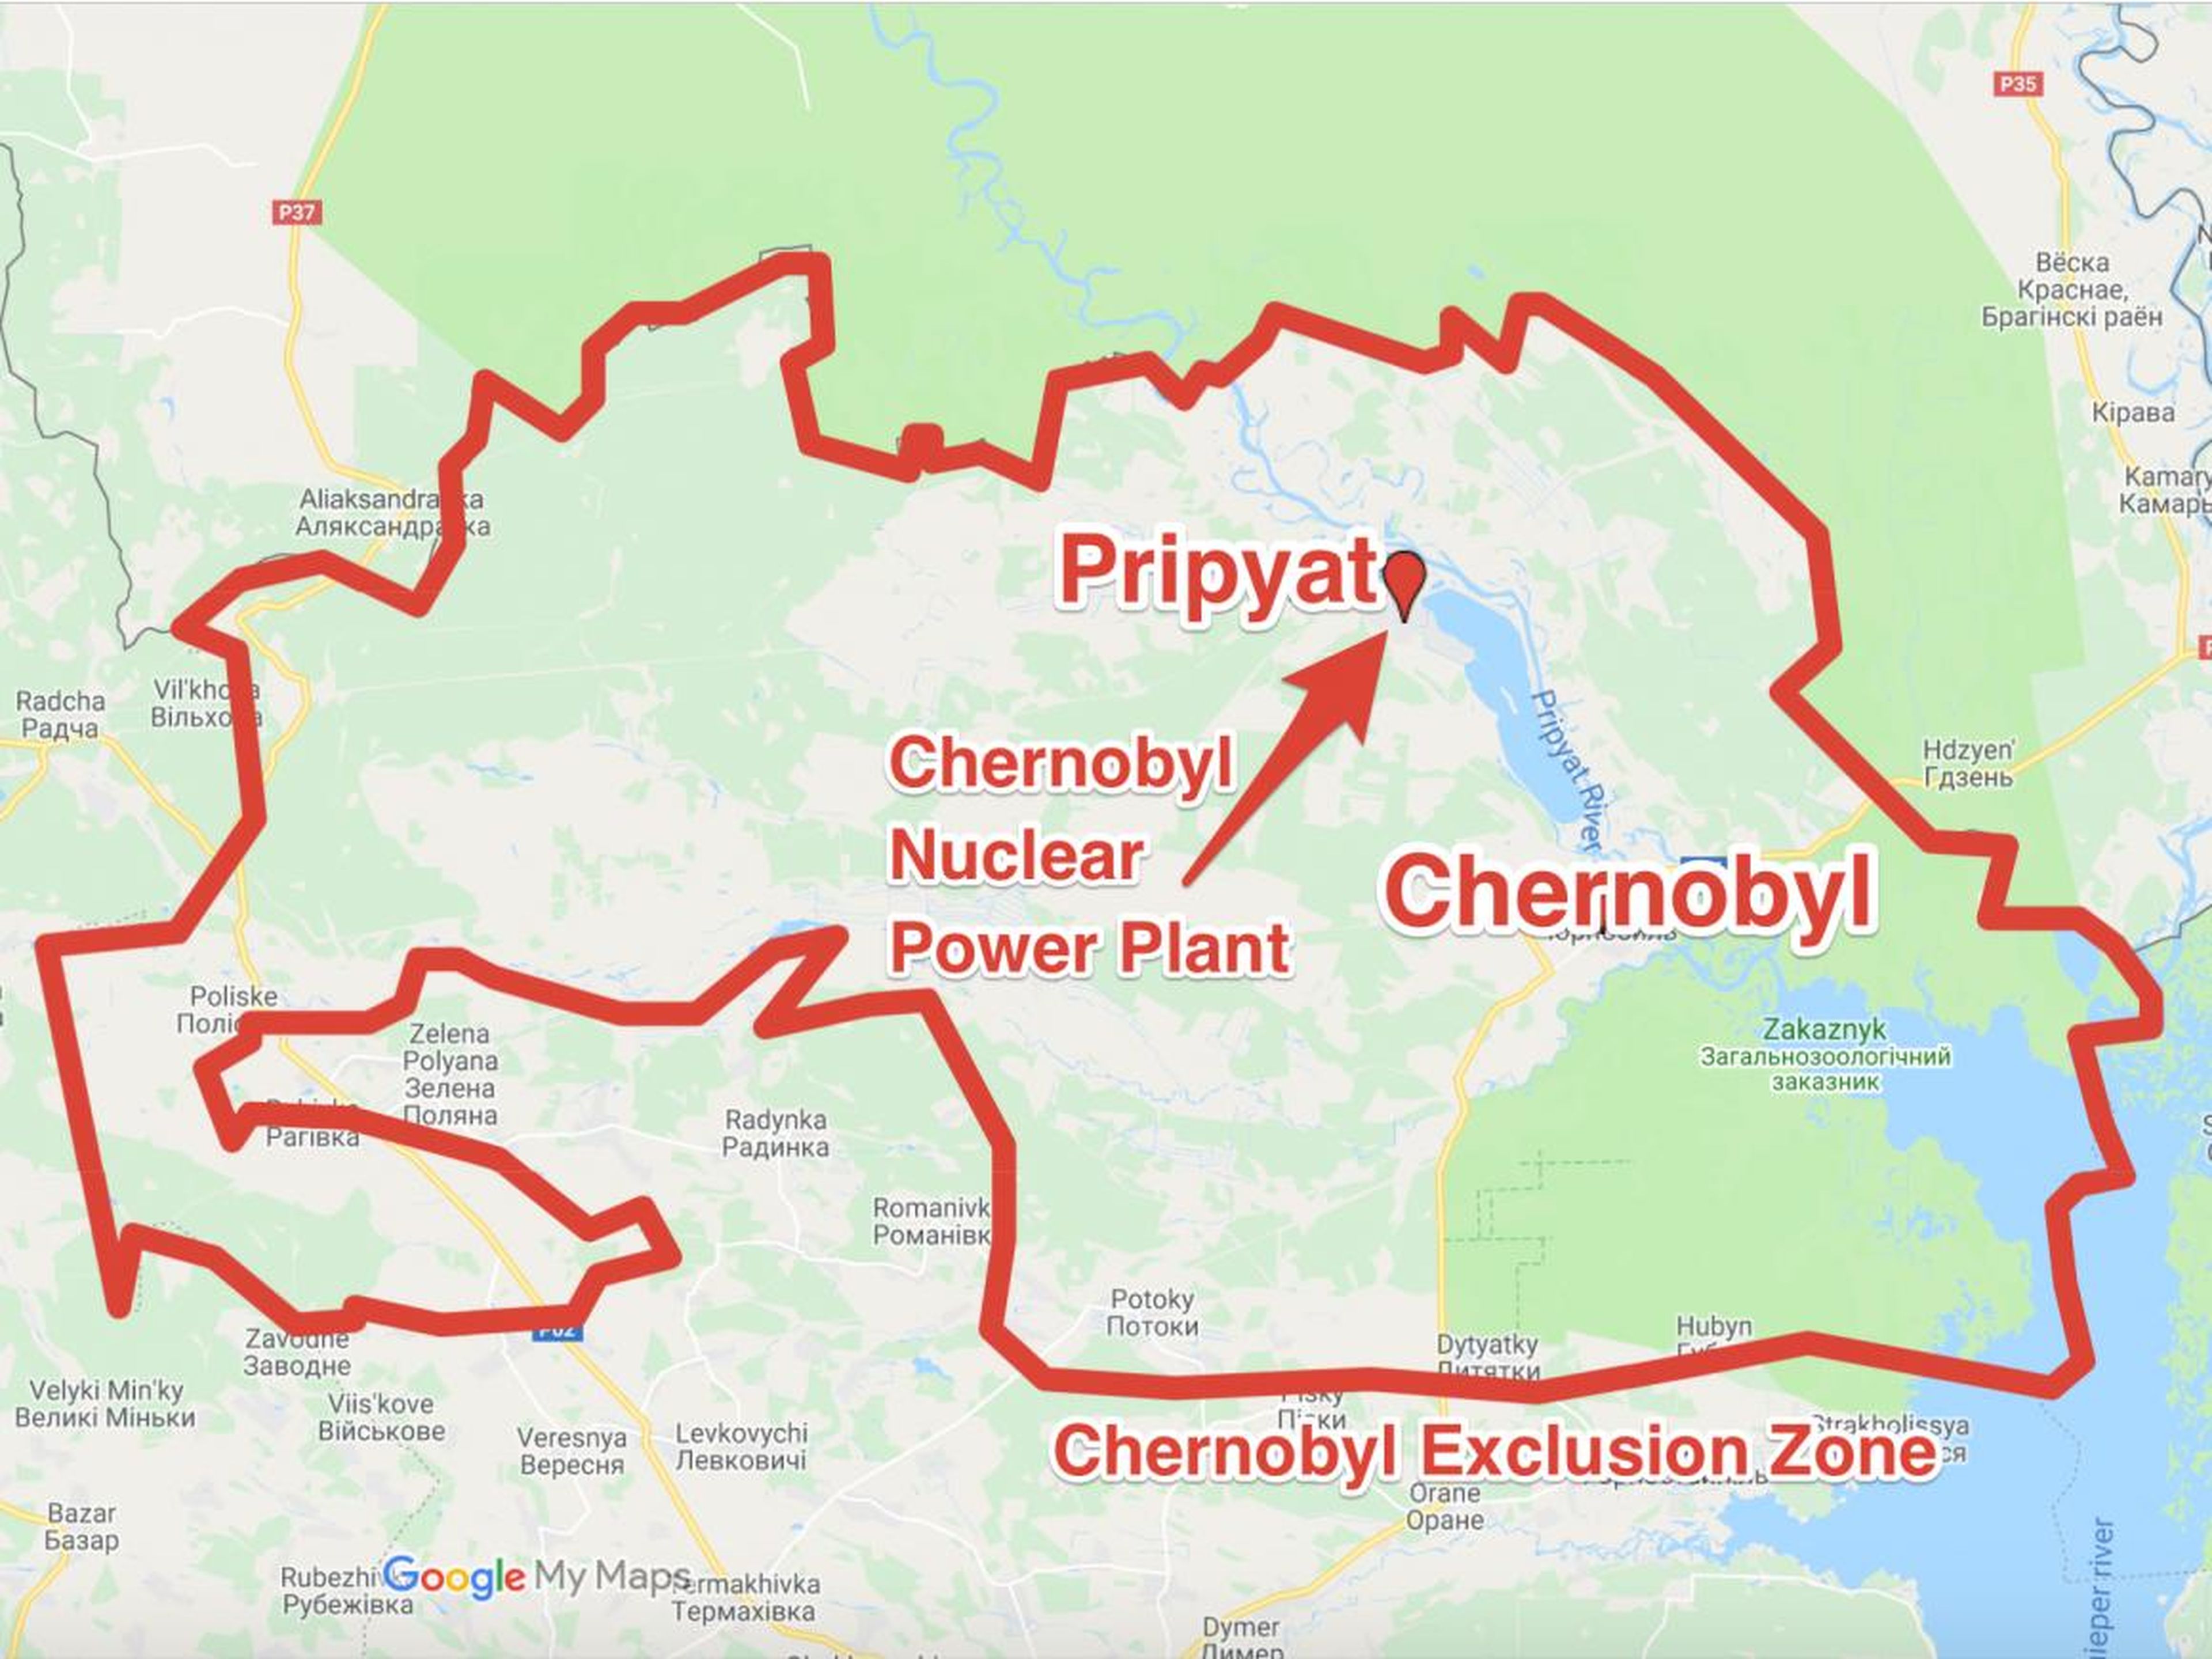 La planta de energía nuclear de Chernobyl está realmente más cerca de la ciudad ahora abandonada de Pripyat que de la ciudad de Chernobyl.